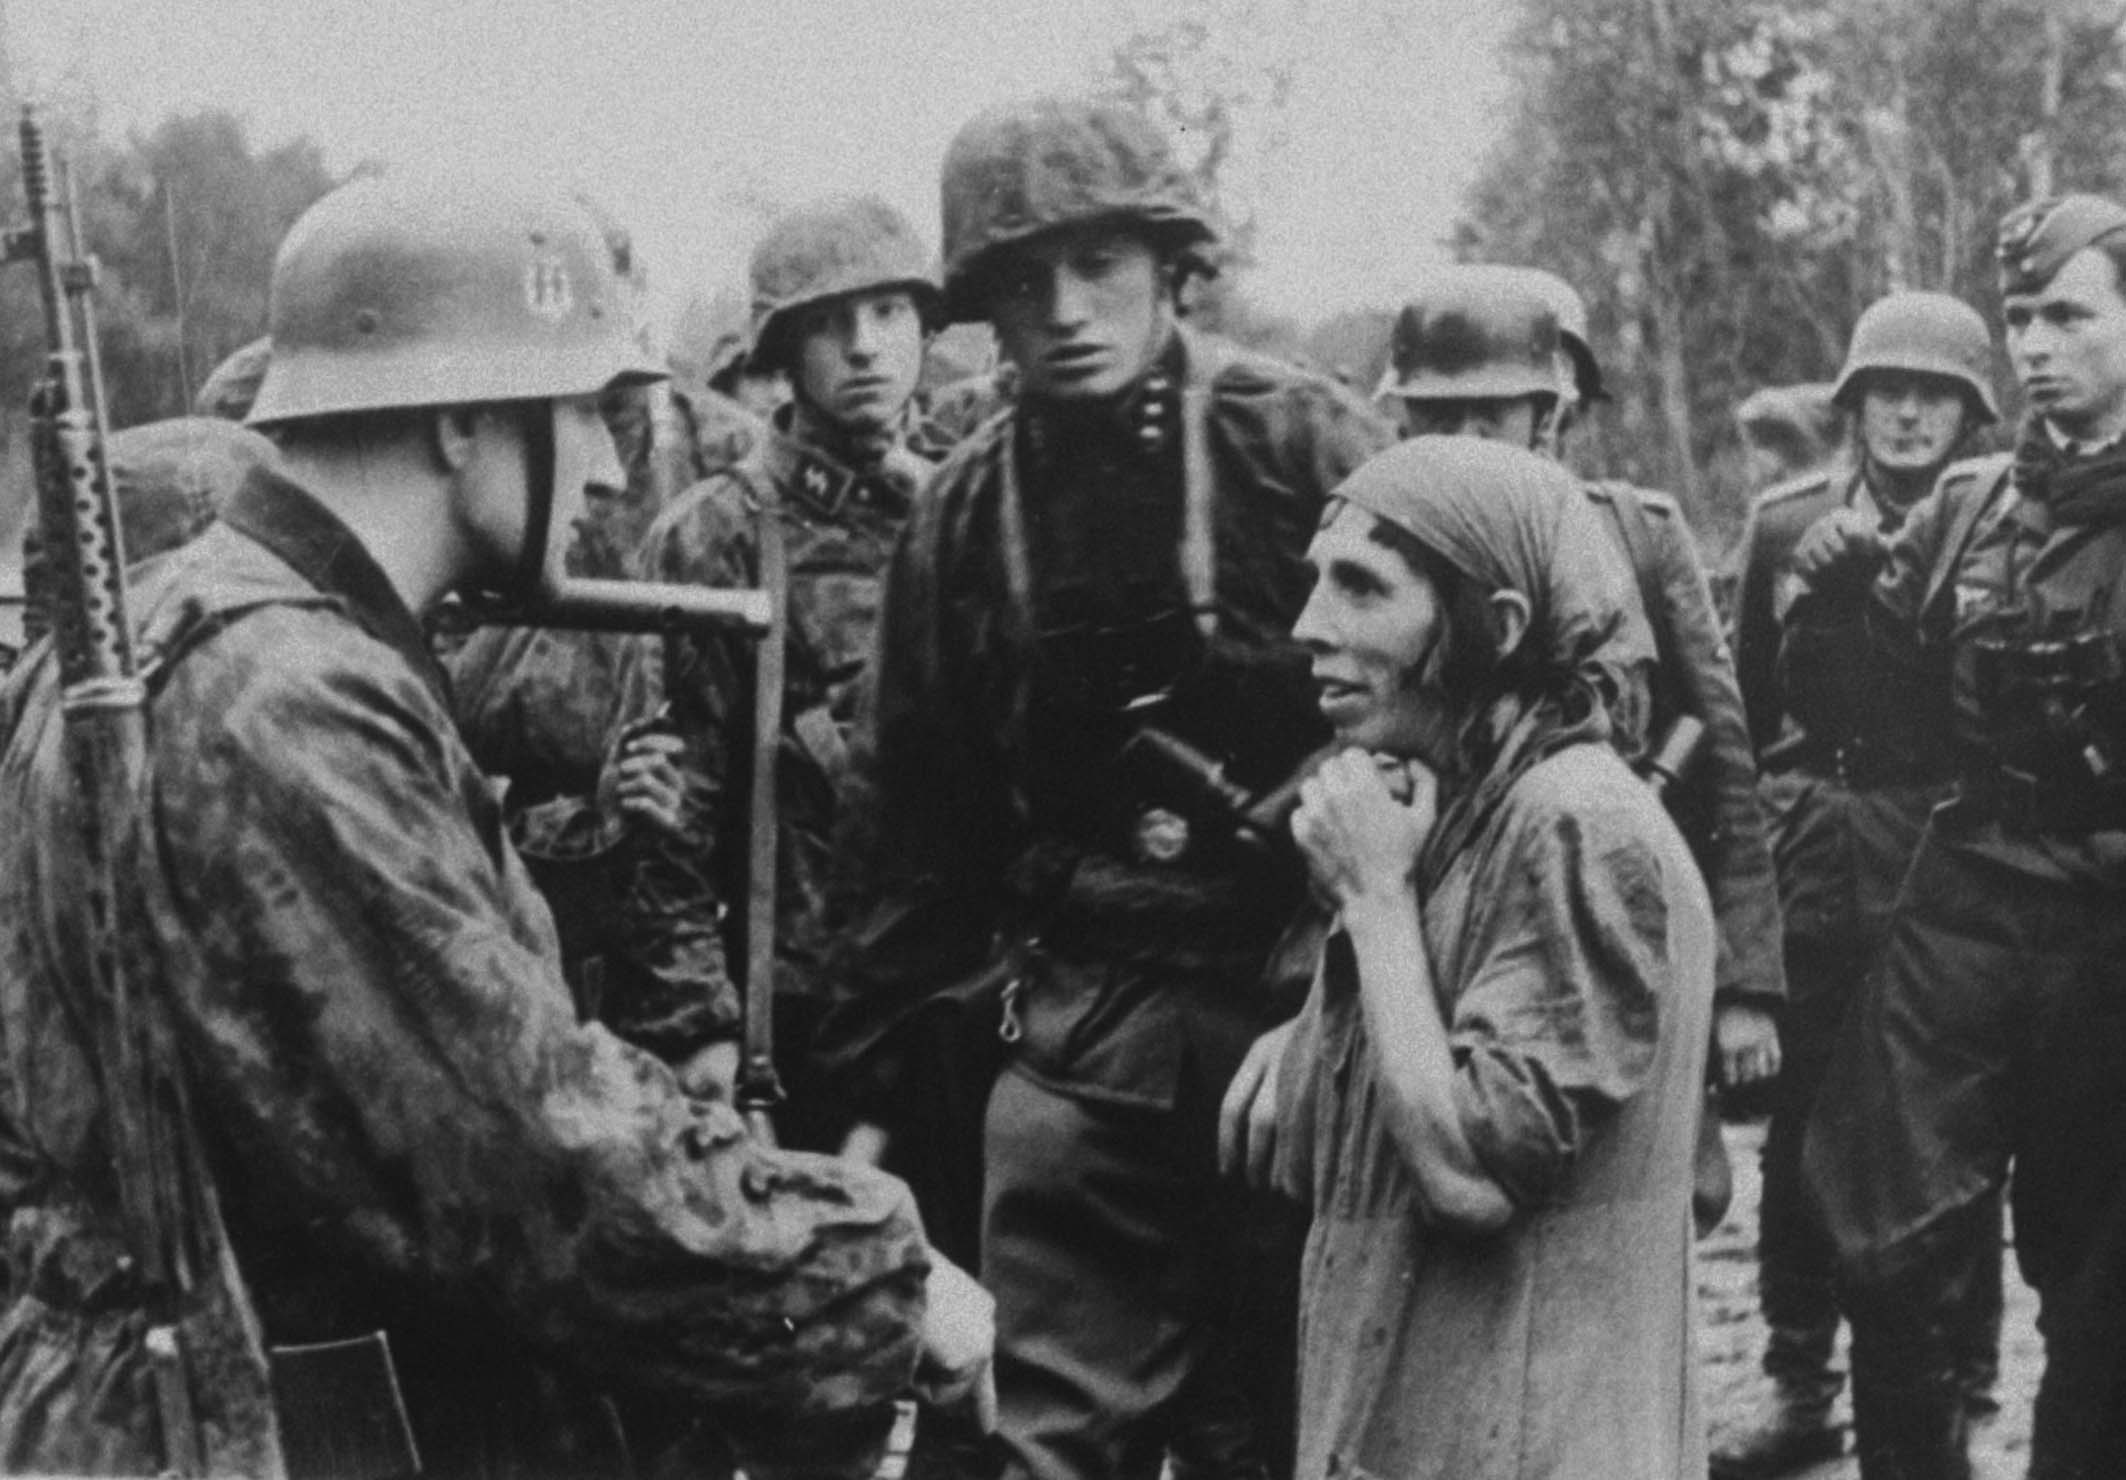 Дети и солдаты вермахта 1941